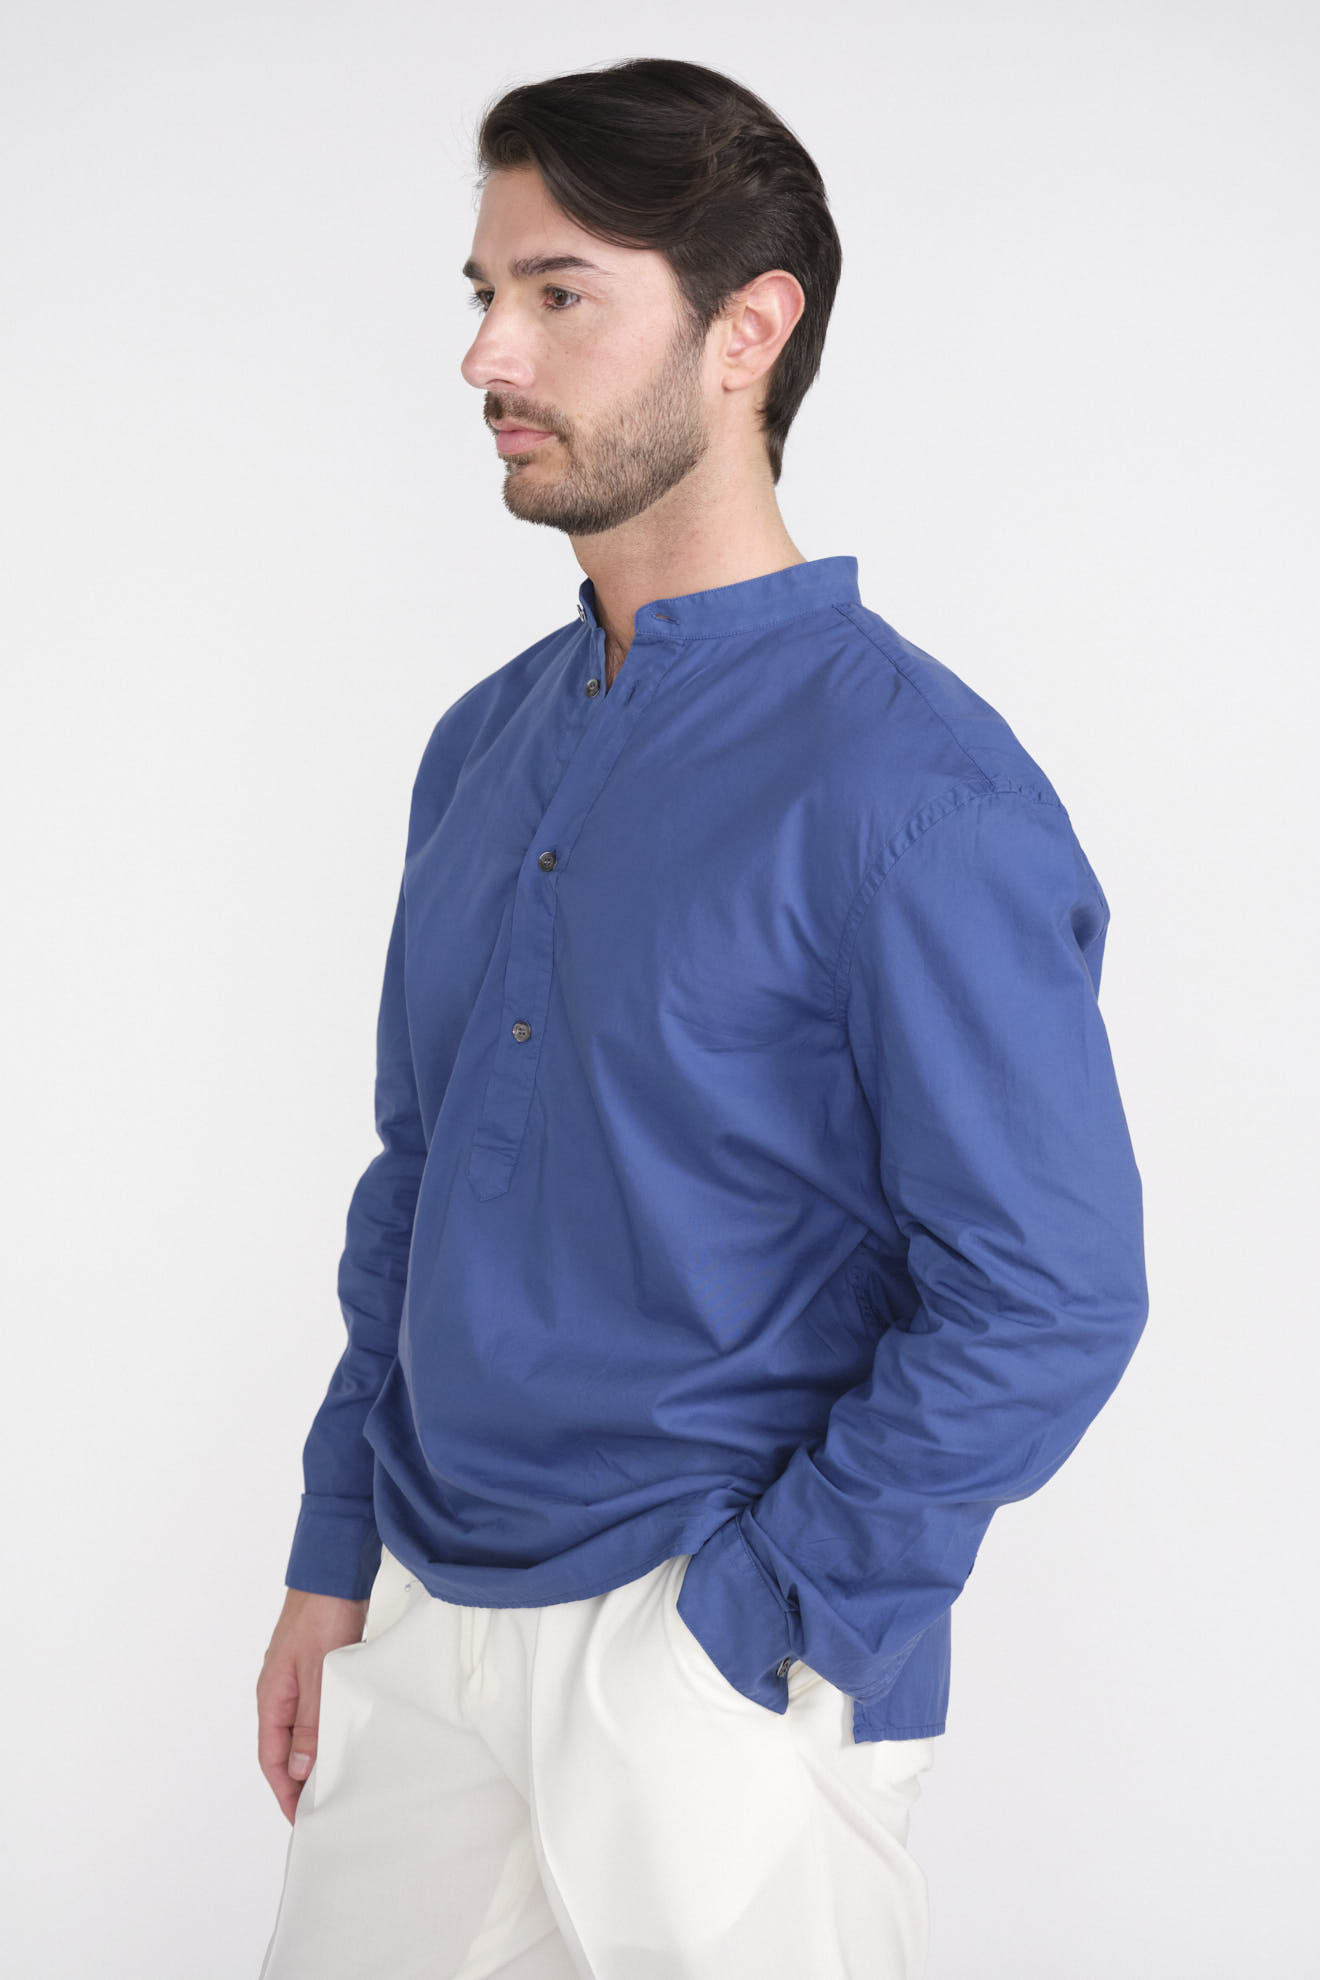 Cotton long sleeve button front shirt blue L